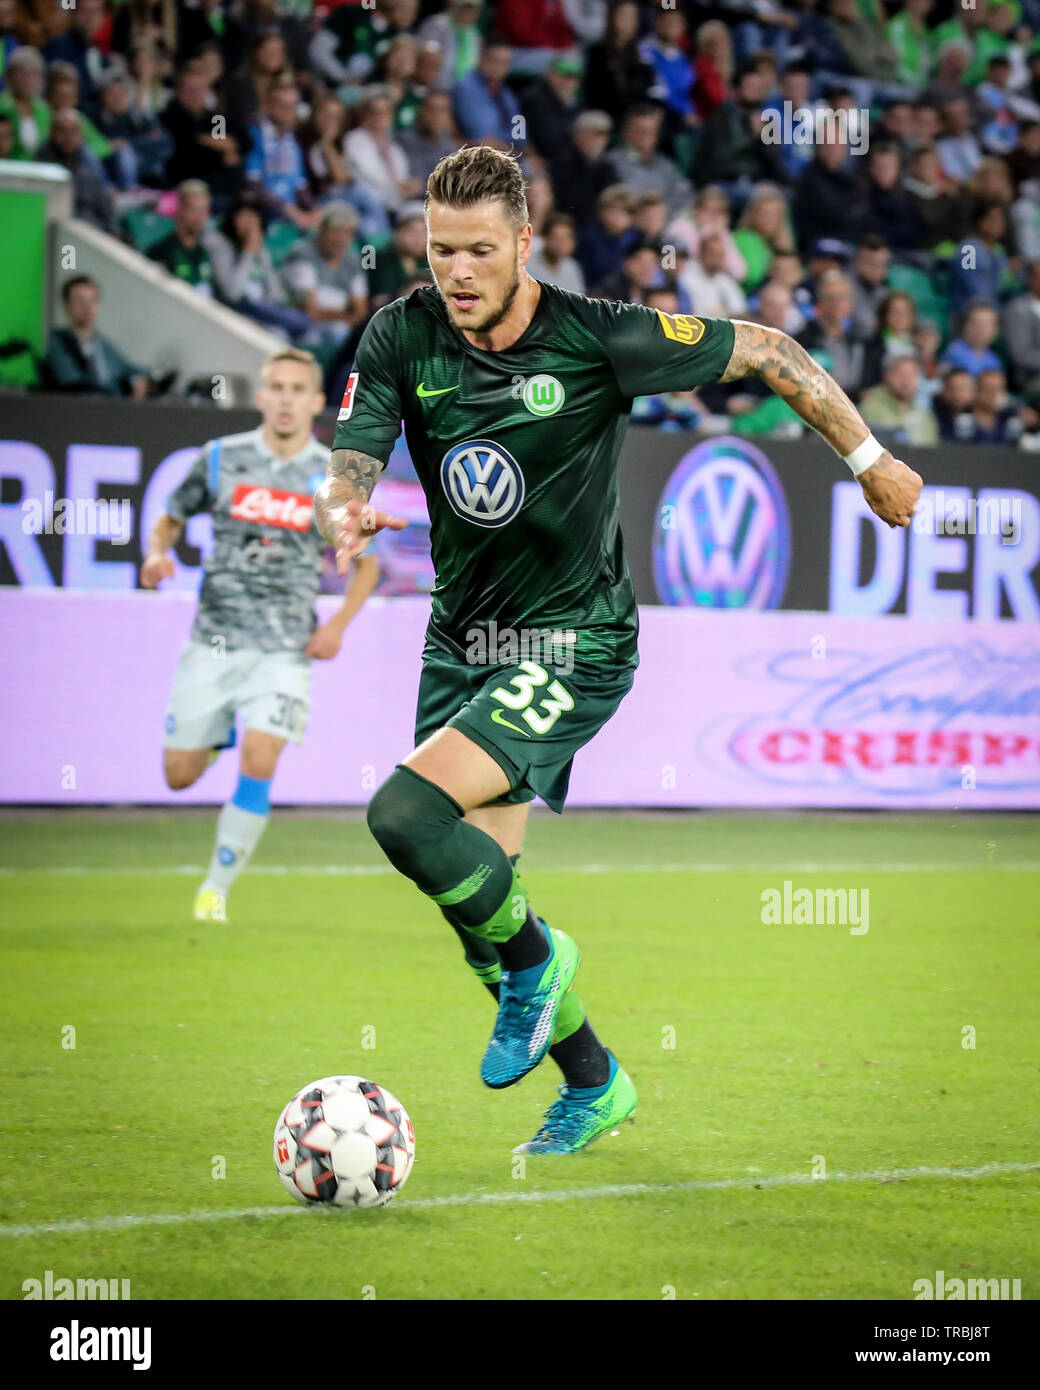 Wolfsburg, Germania, 11 agosto 2018: giocatore di calcio, Daniel Ginczek #33, in azione durante una partita su 2018 - 2019 stagione. Foto di Michele Morrone. Foto Stock